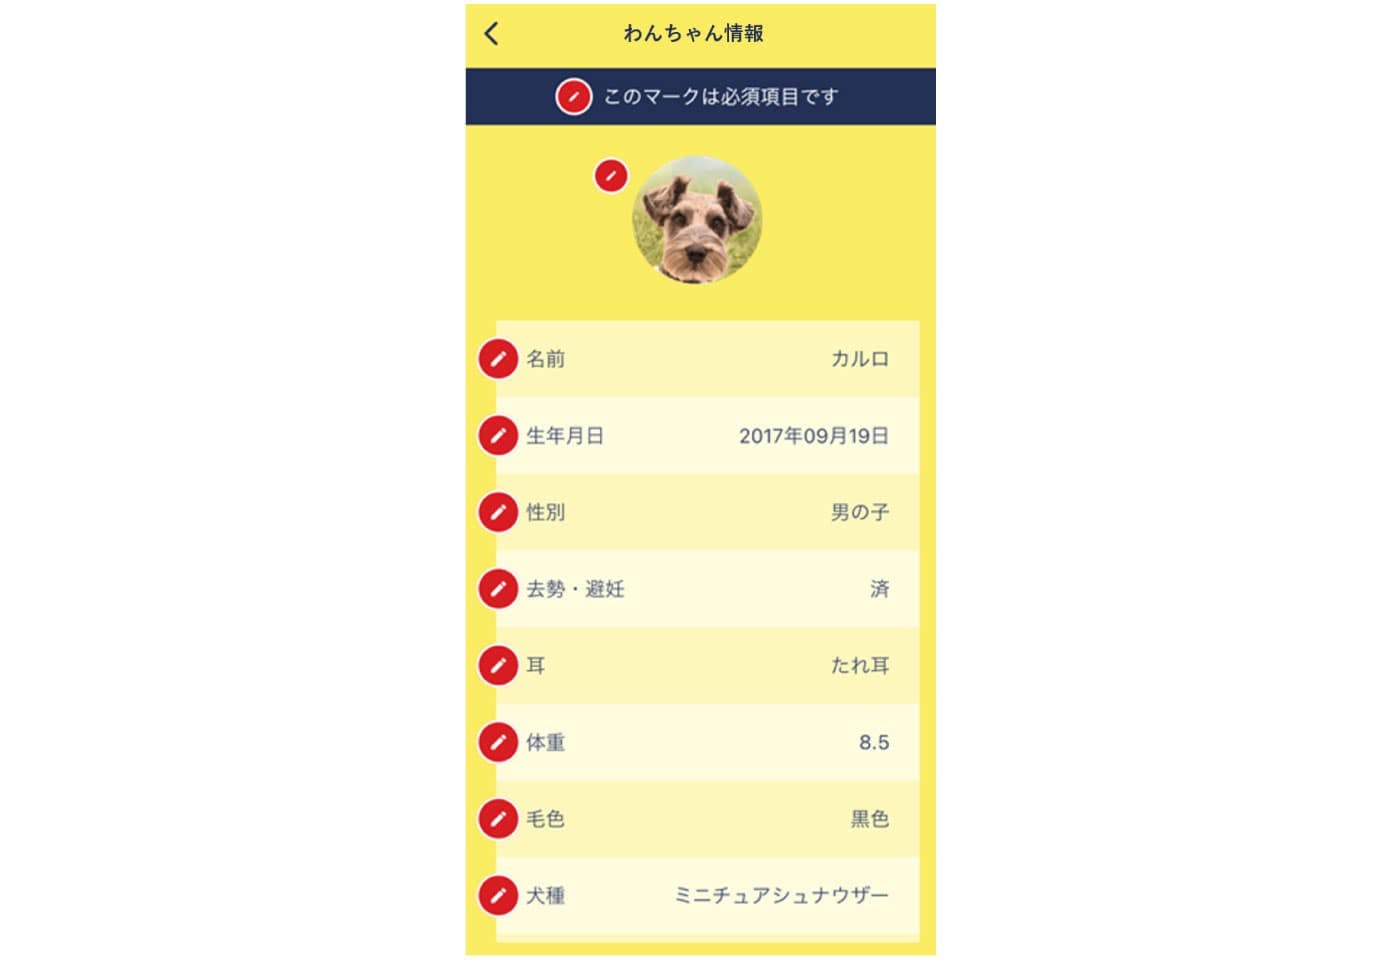 アプリ「Nose ID」の飼い犬の情報登録画面